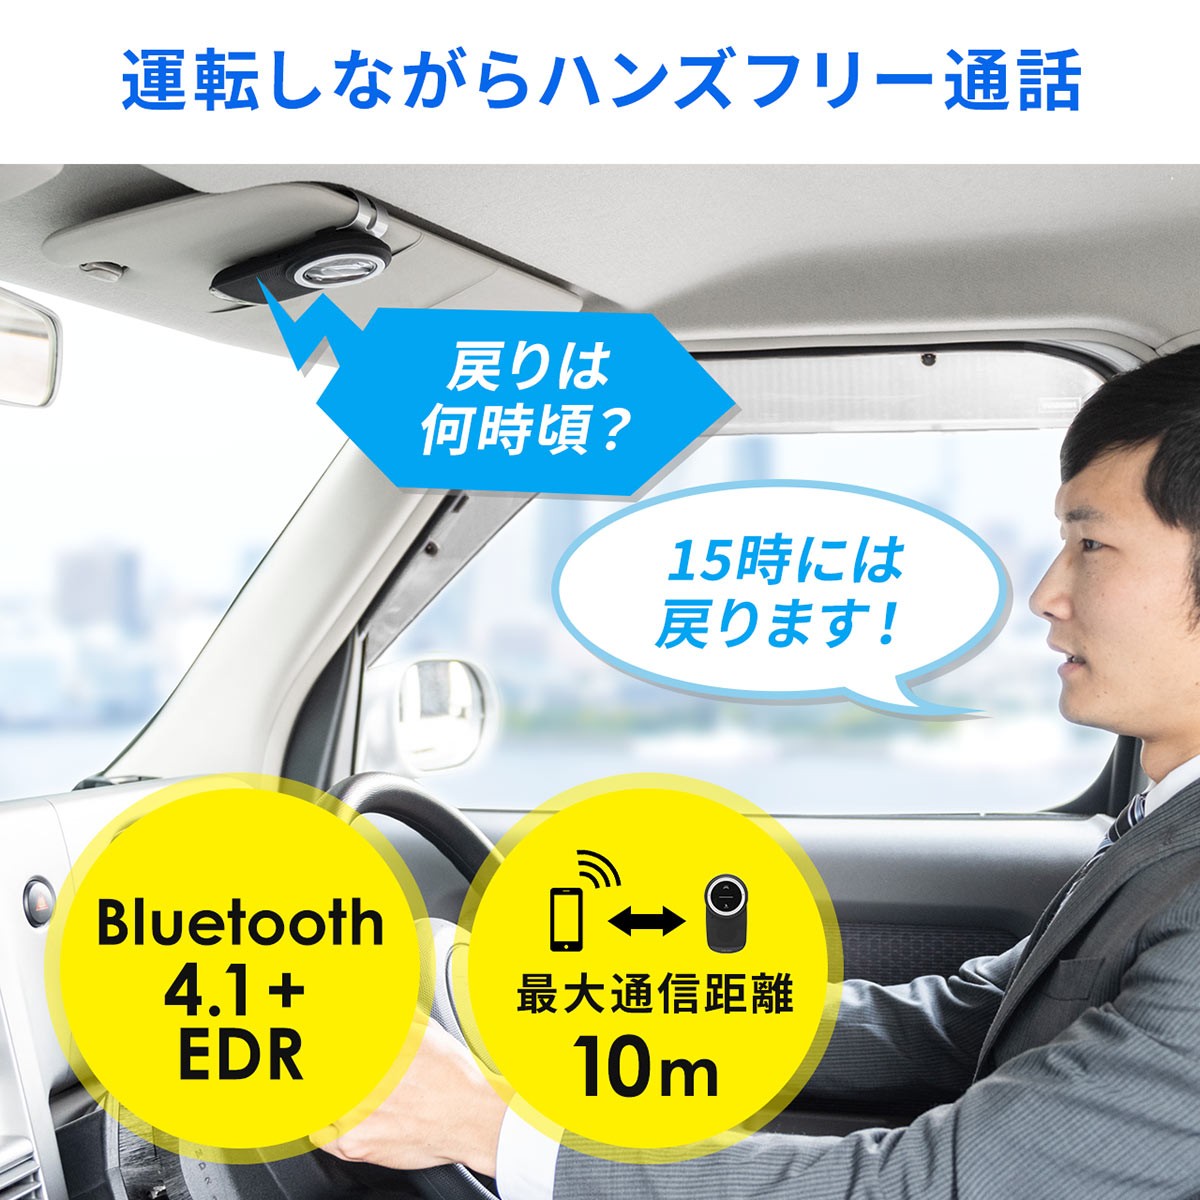 ハンズフリー 車 Bluetooth 車載 通話 電話 Iphone スマホ 長時間 高音質 ノイズキャンセル 運転中通話 ながら運転対策 400 Btcar003 サンワダイレクト 通販 Yahoo ショッピング